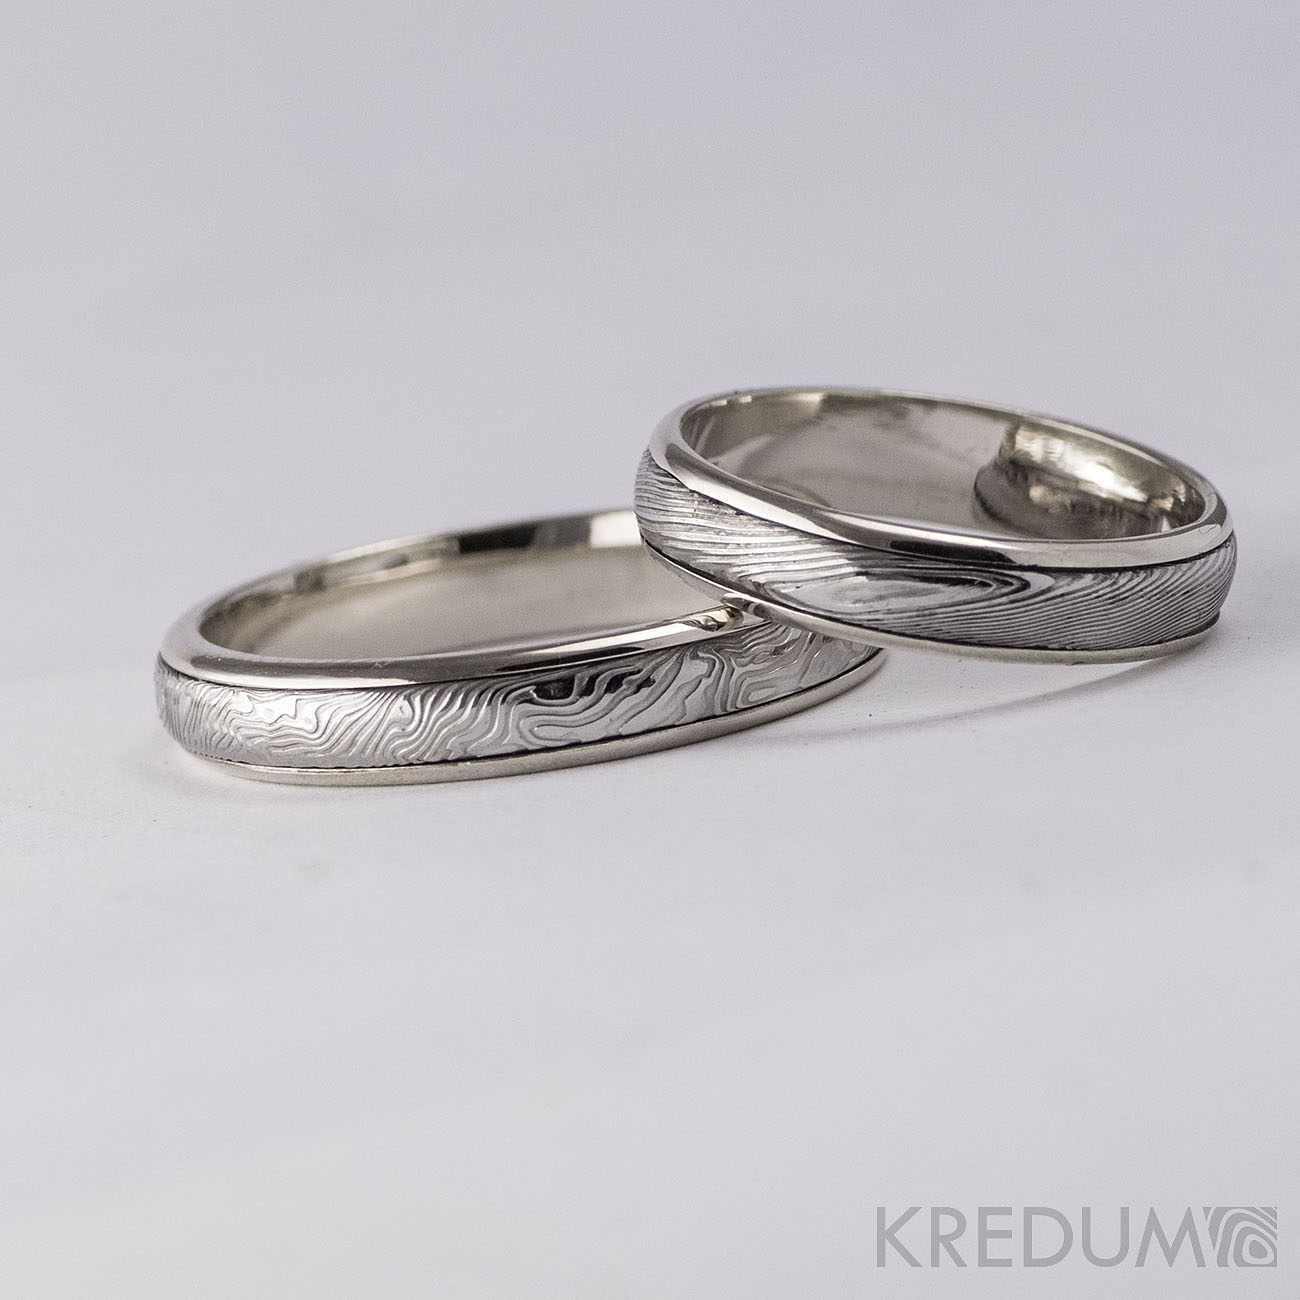 Pár nových prstenů v kombinaci damasteel a zlato, bílé zlato či stříbro - Obrázek č. 7